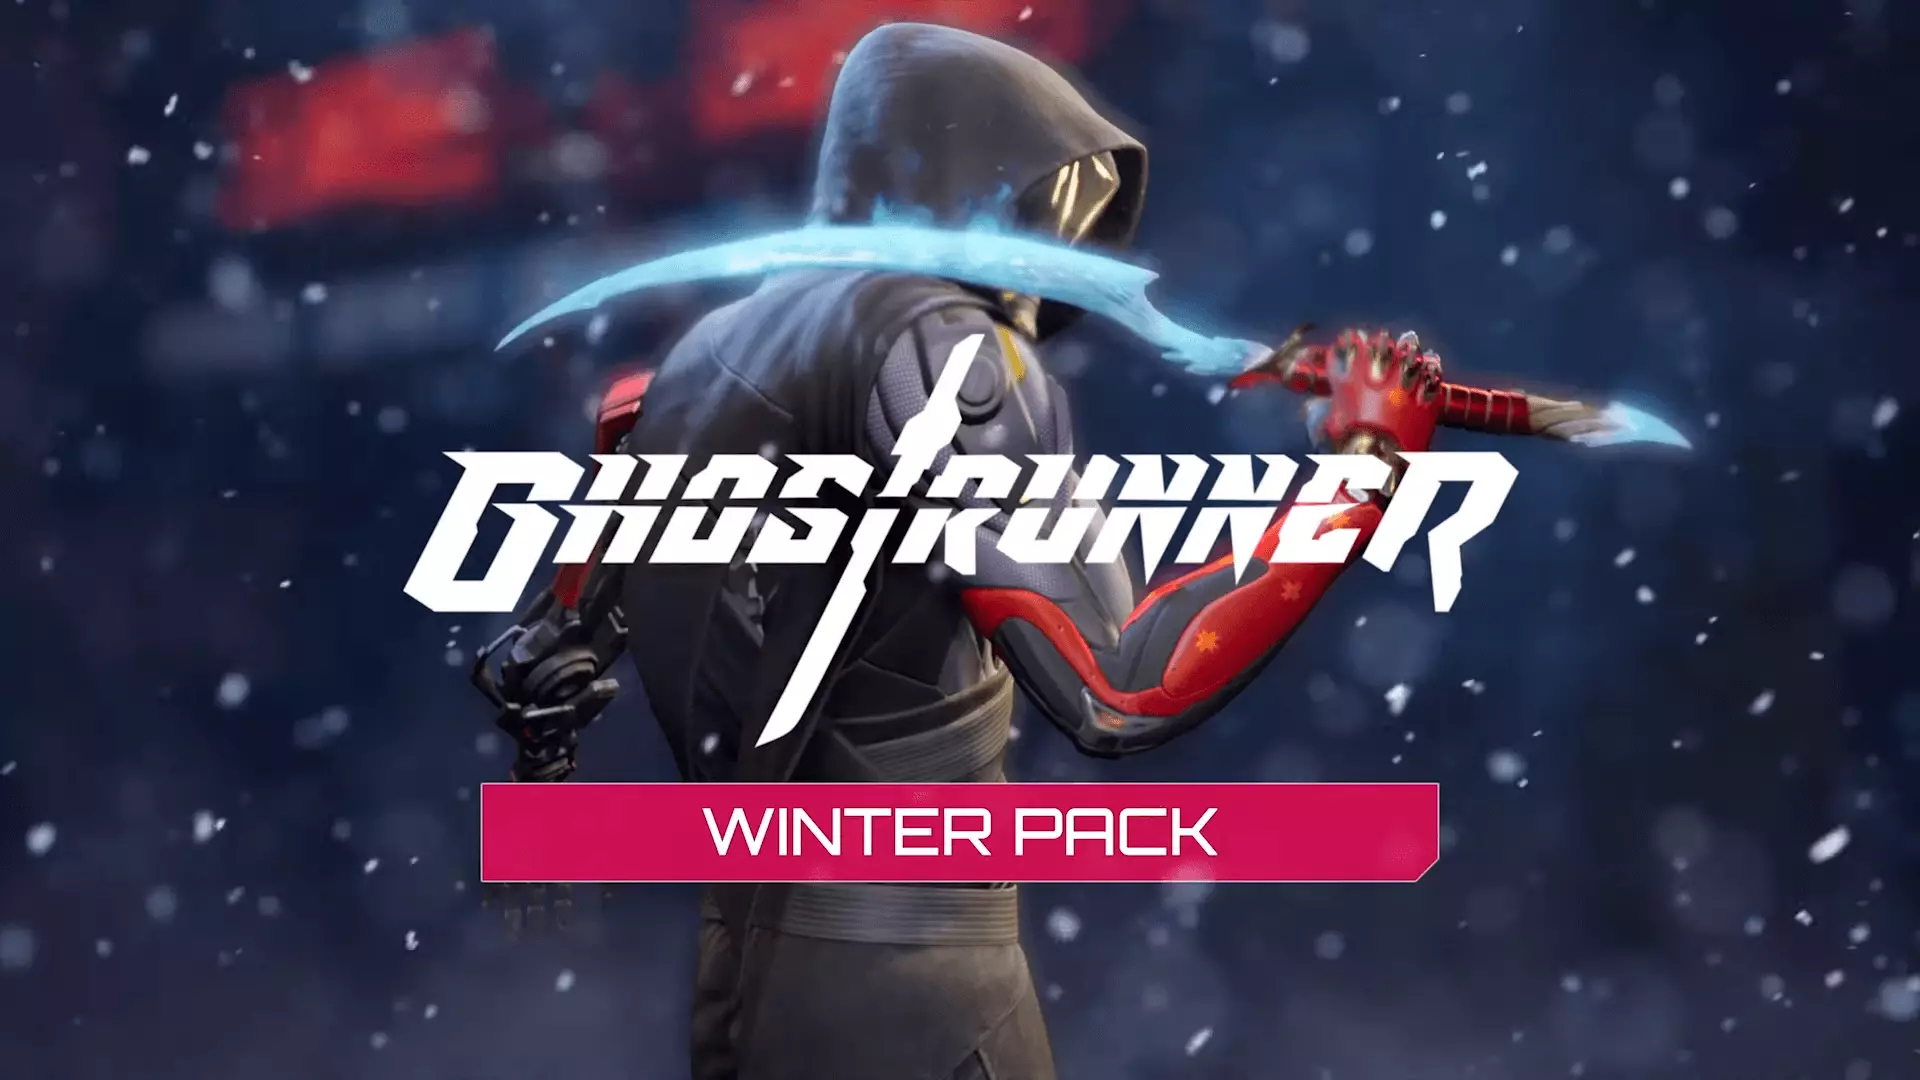 Ghostrunner, киберпанк-паркур-боевик от первого лица, должен получить бесплатный Hardcore Mode, идущий по пятам за уже вышедшим платным Зимним набором, включающим праздничные сезонные предметы, в том числе катану и перчатку.